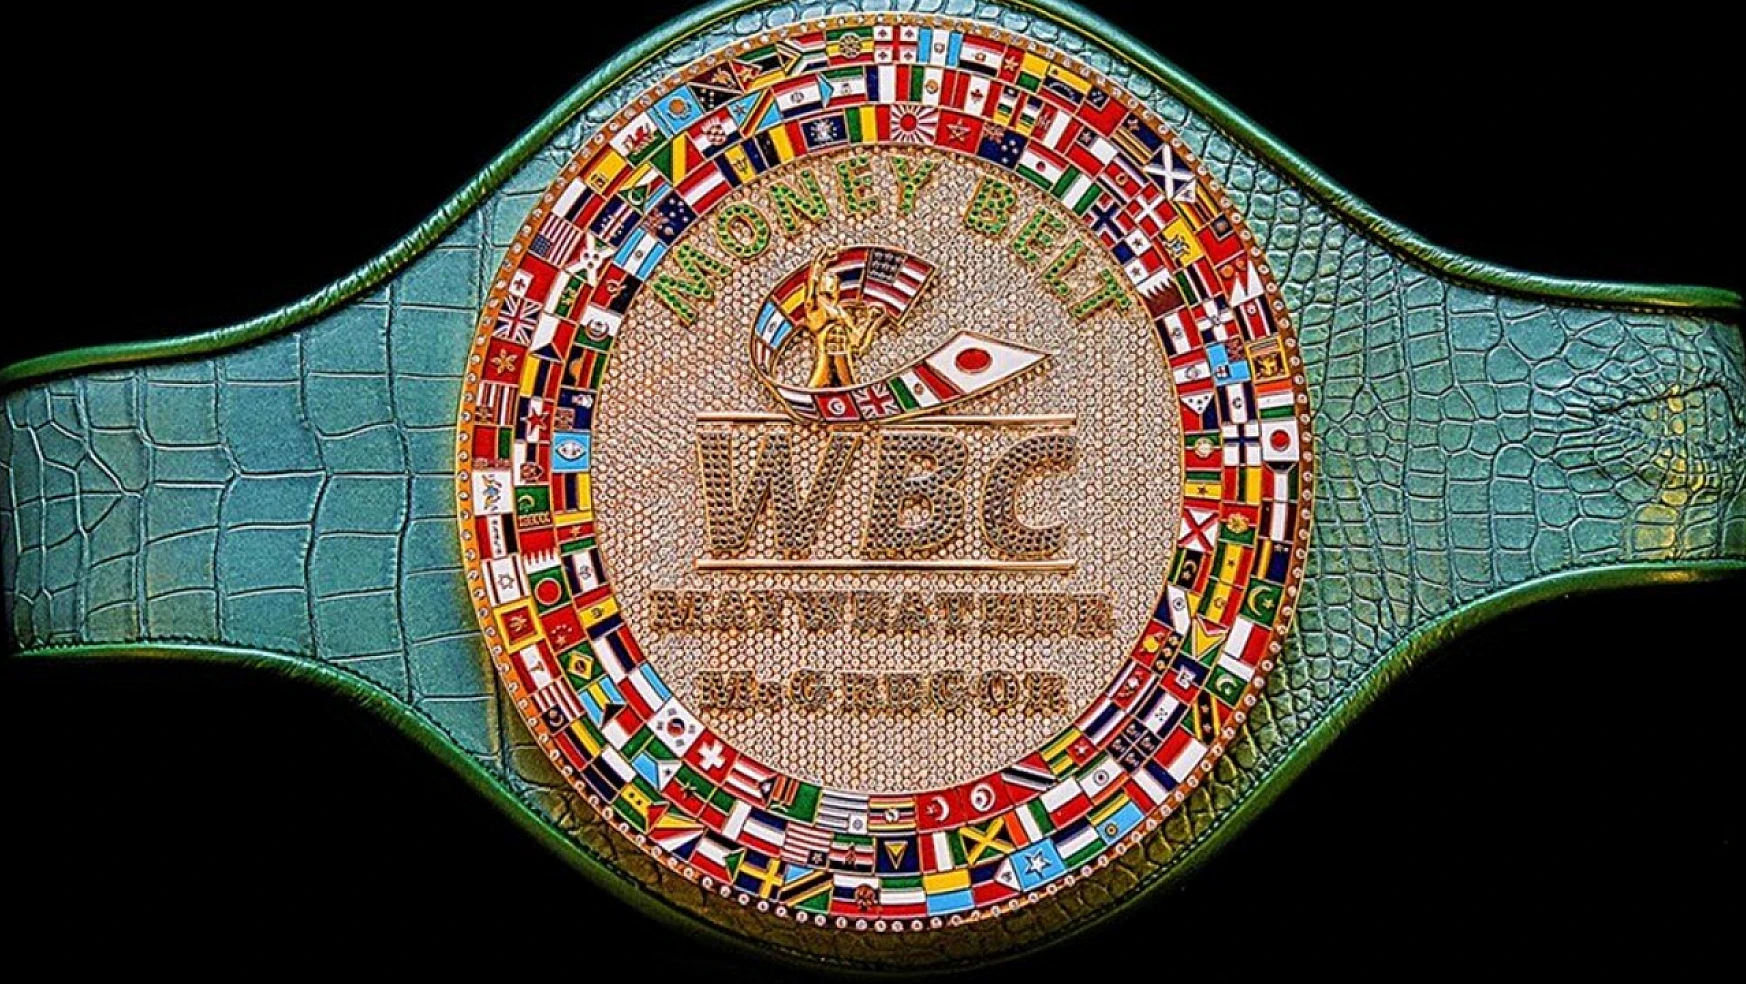 WBC ağırsiklet sıralaması güncellendi!.. İşte WBC'nin yeni sıralaması…